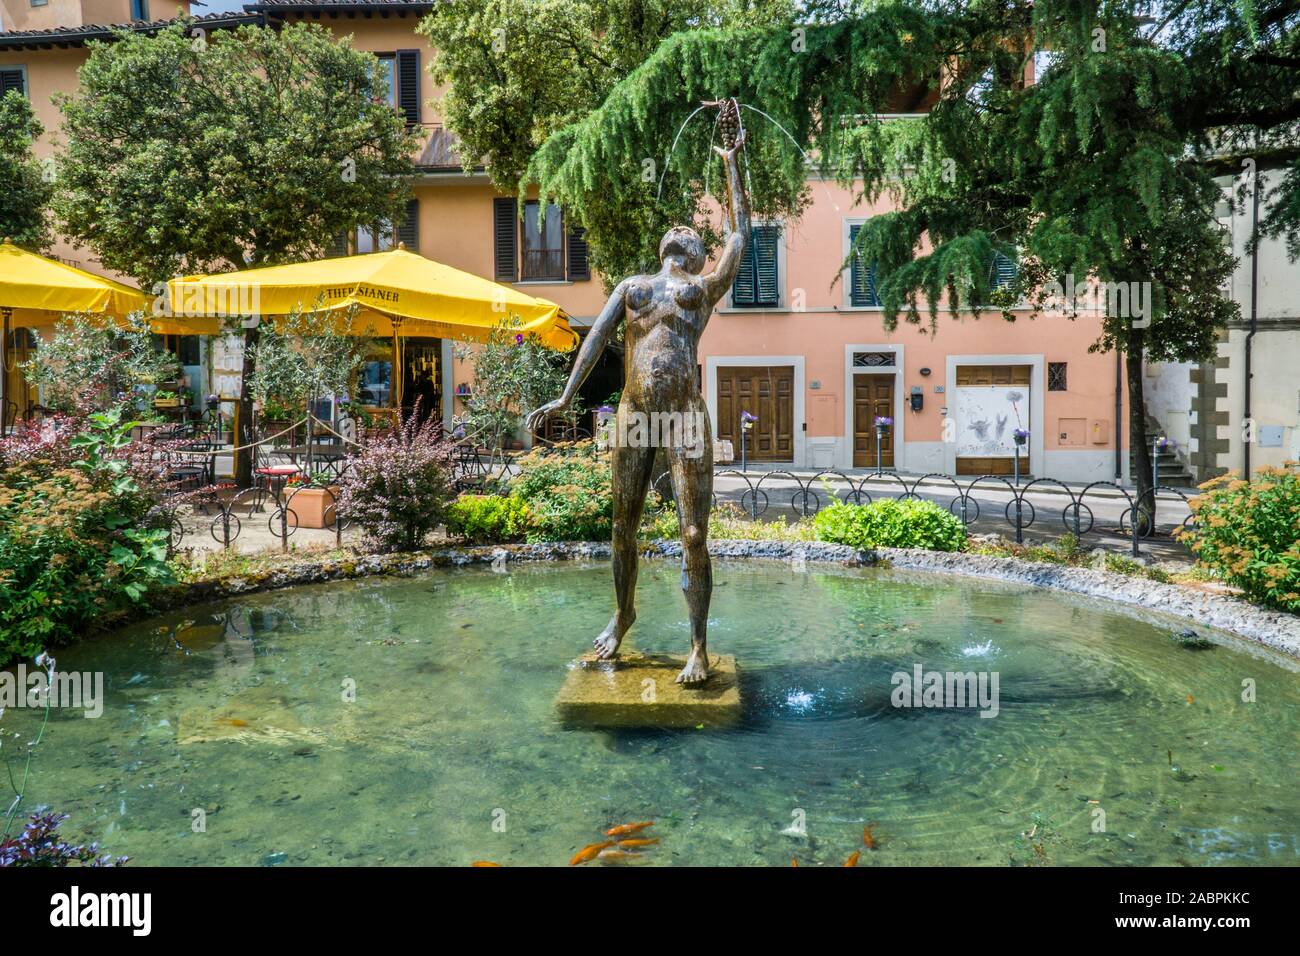 fountain statue at Piazza Gastone Bucciarelli, Panzano in Chianti, in the rural region of Chianti, province of Siena, Tuscany, Italy Stock Photo